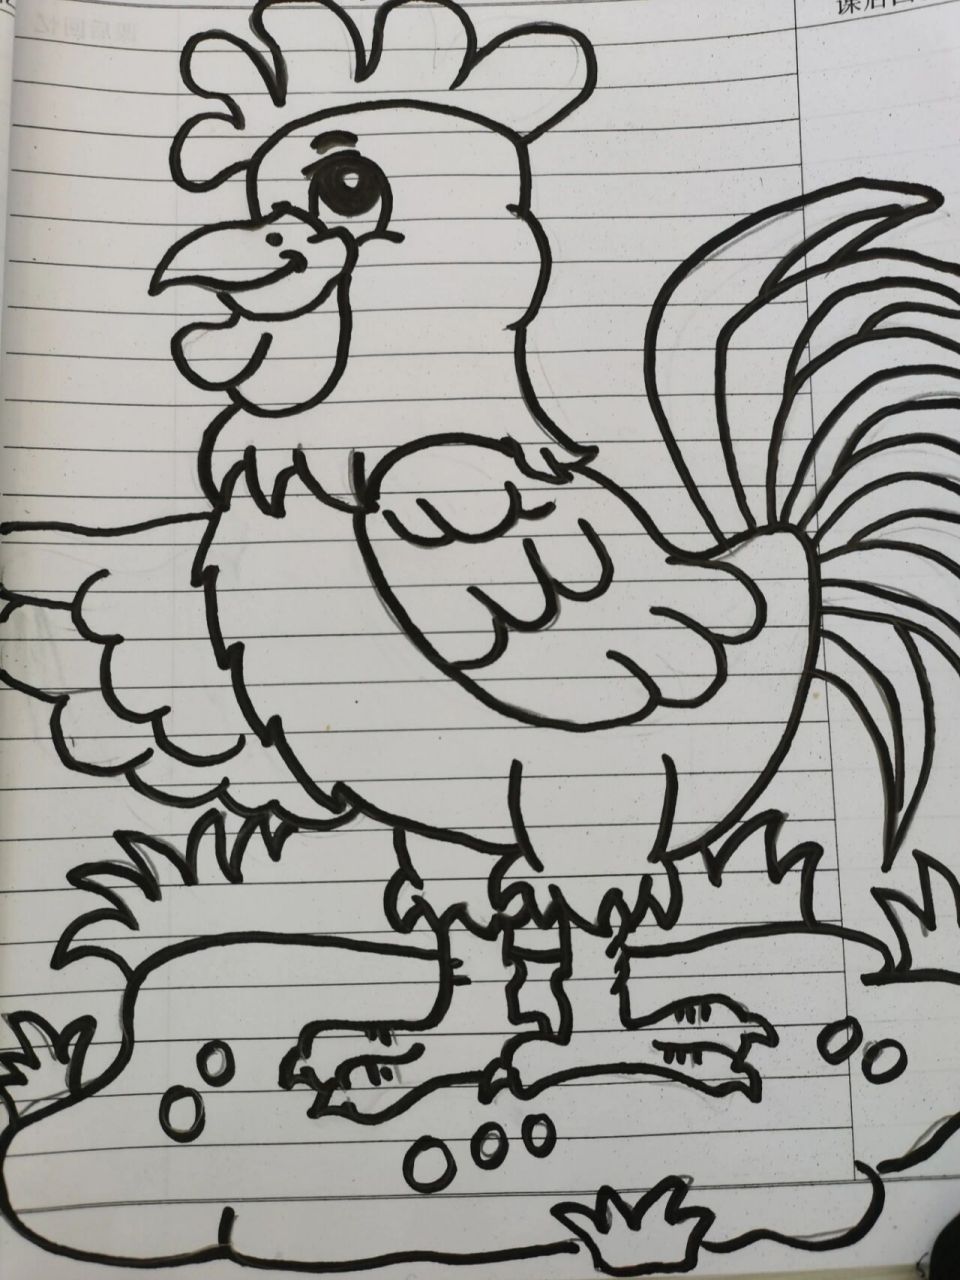 画一只大公鸡怎么画图片